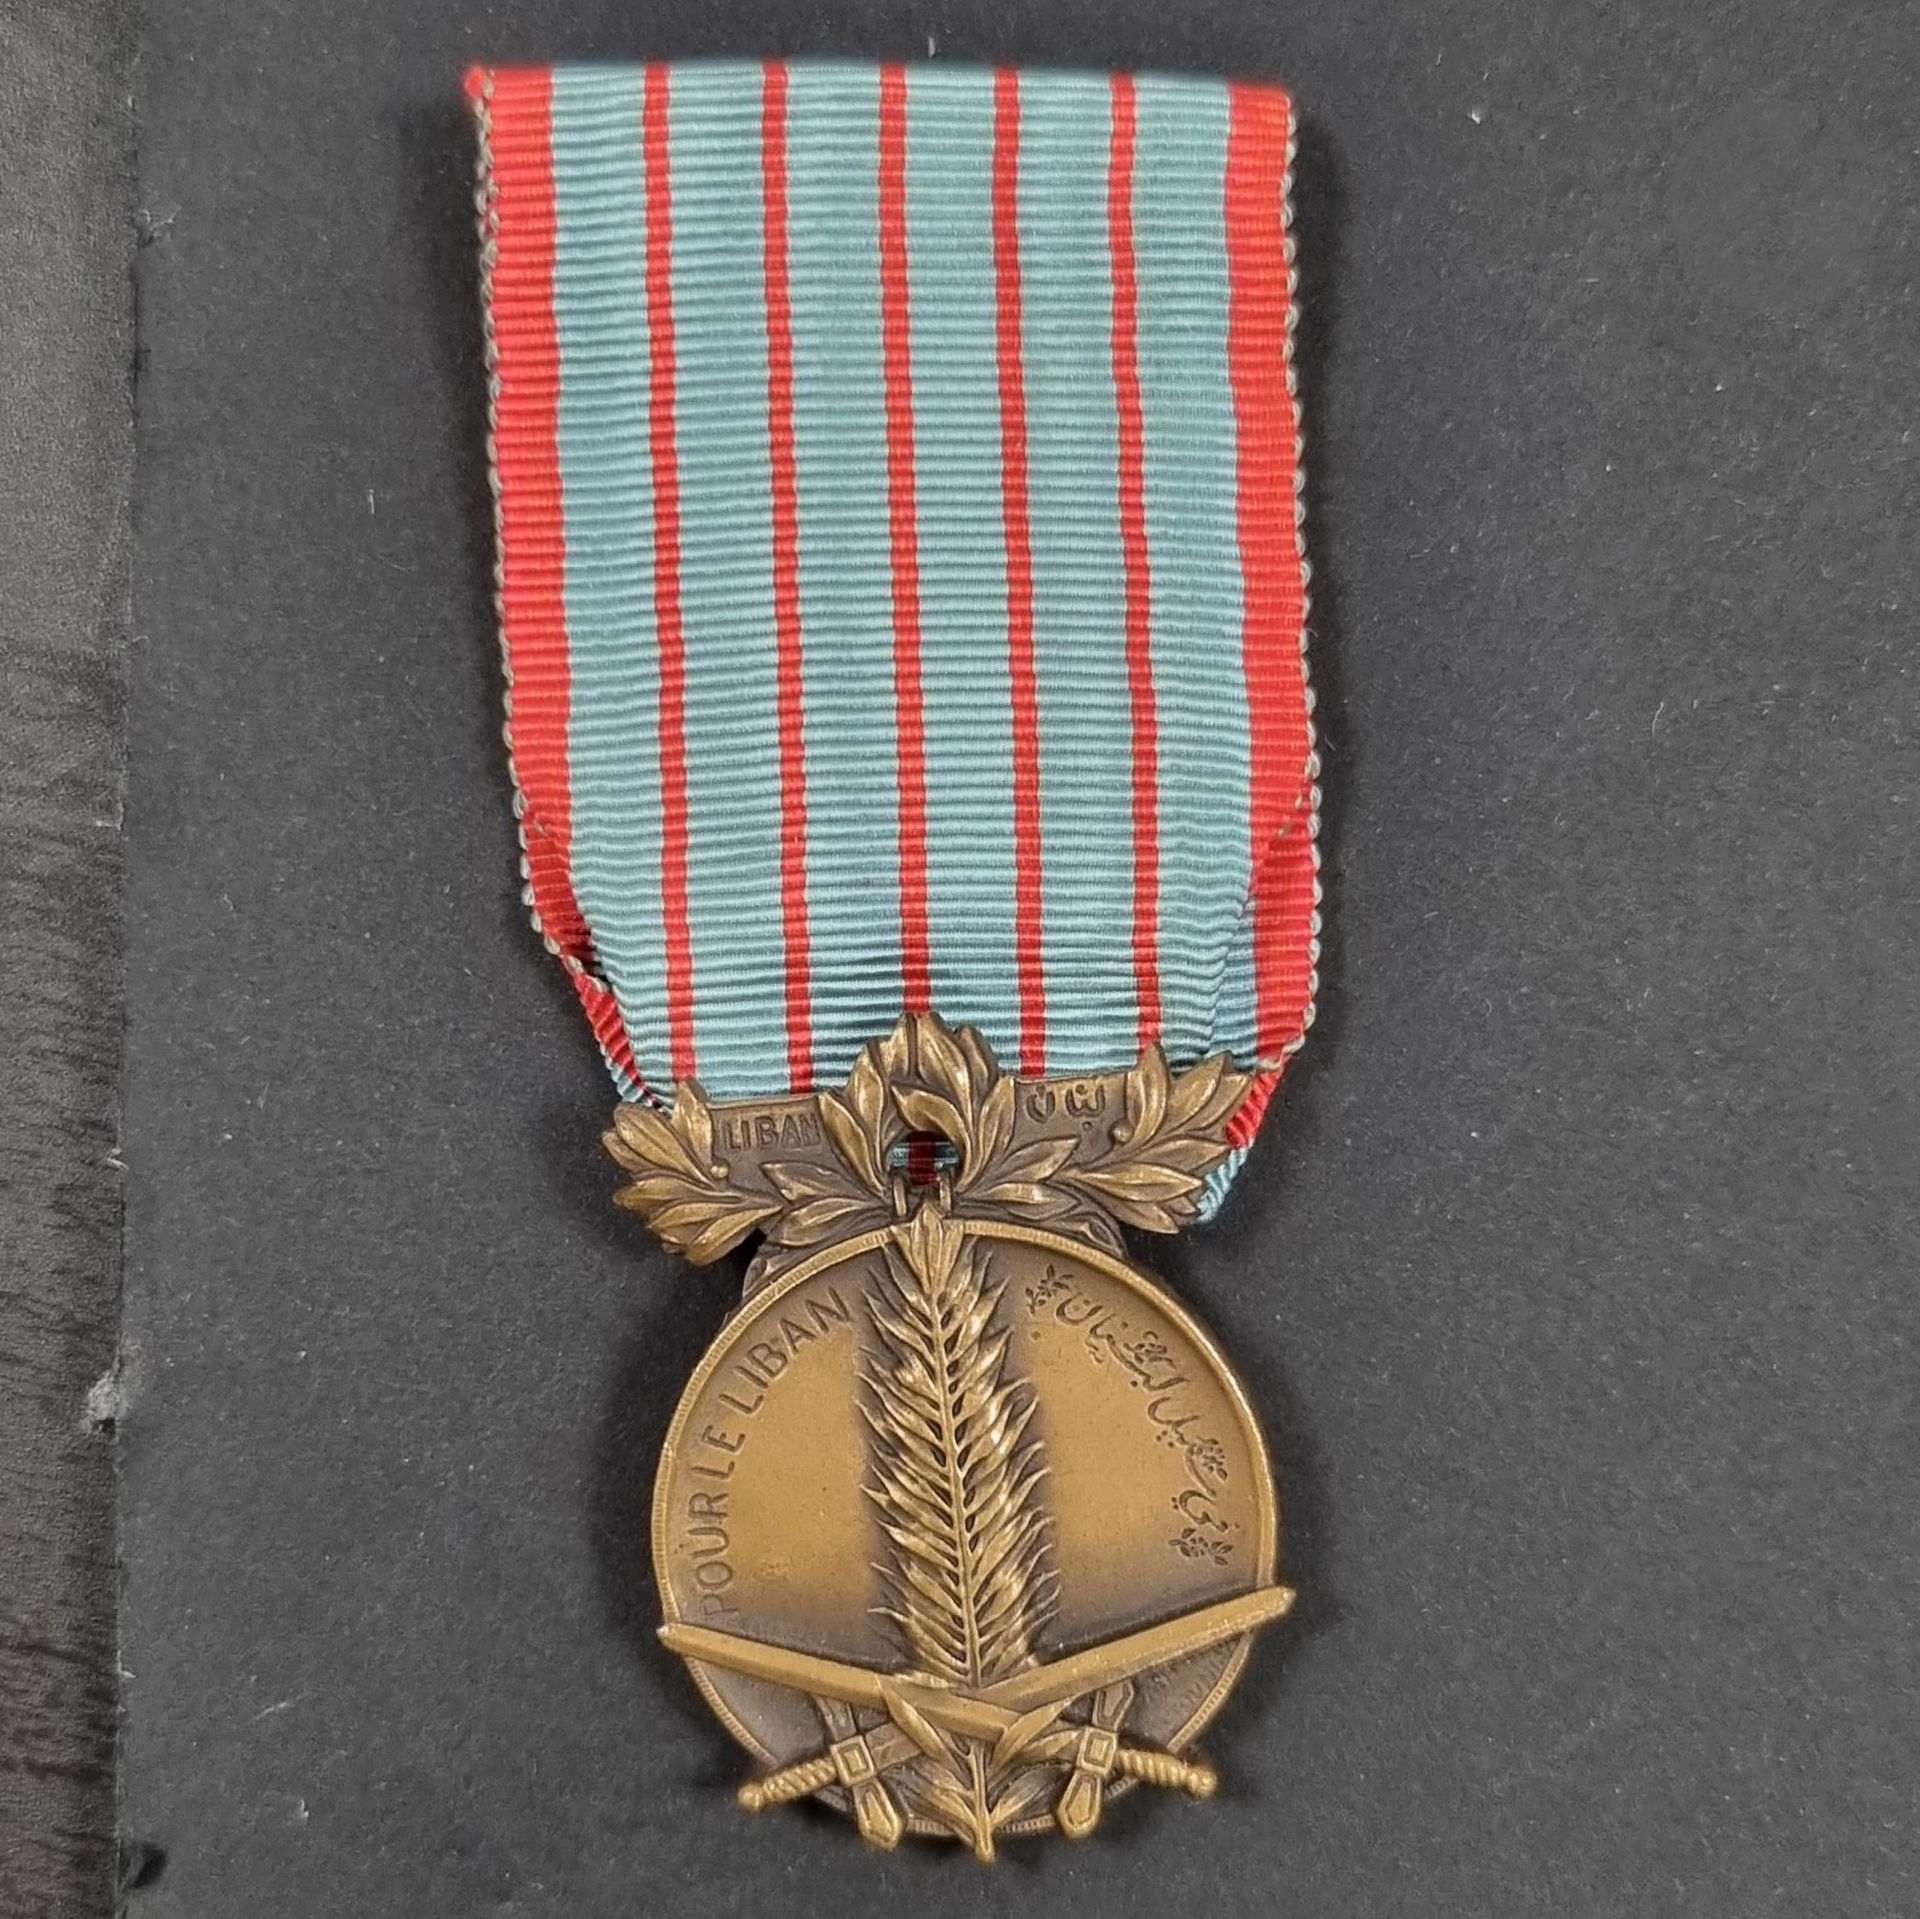 Null 黎巴嫩 
1926年 "黎巴嫩 "奖章
第二种类型的奖章。 
青铜质地。绶带。 
40 x 28 mm 
纪念章。